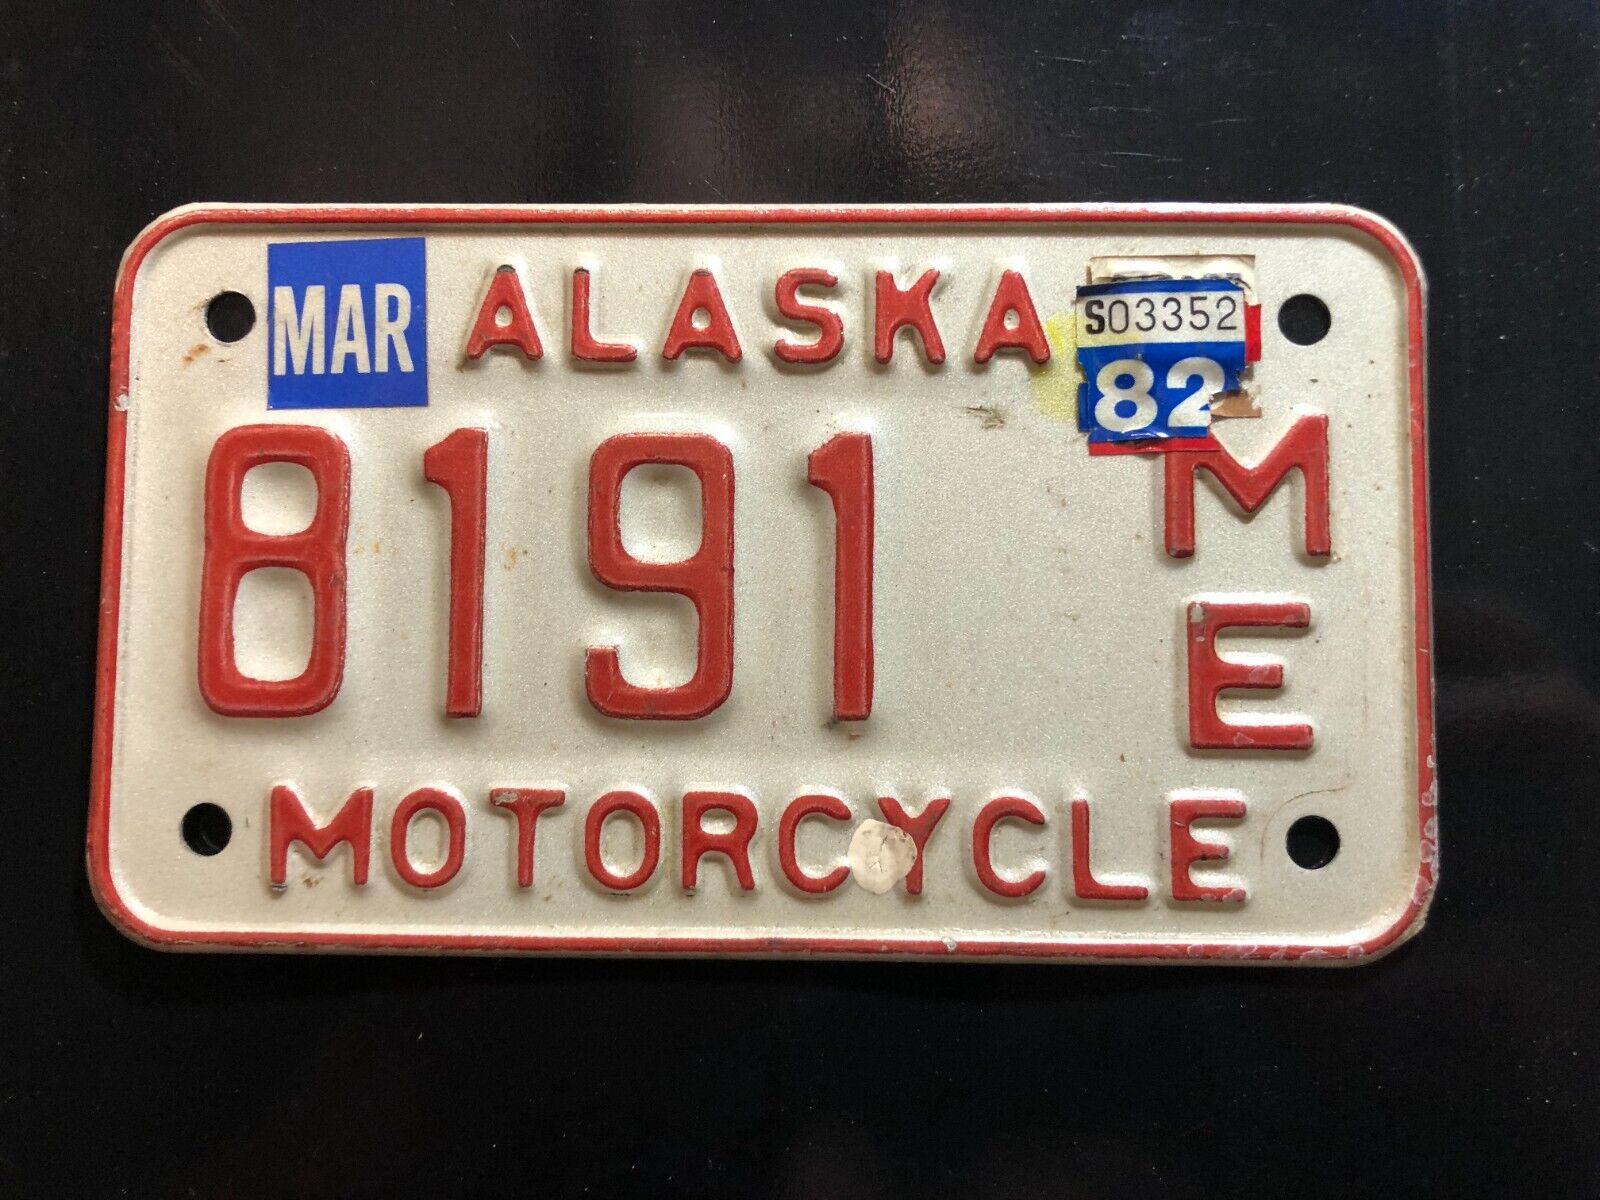 ALASKAN VINTAGE MOTORCYCLE LICENSE PLATE-1970'S